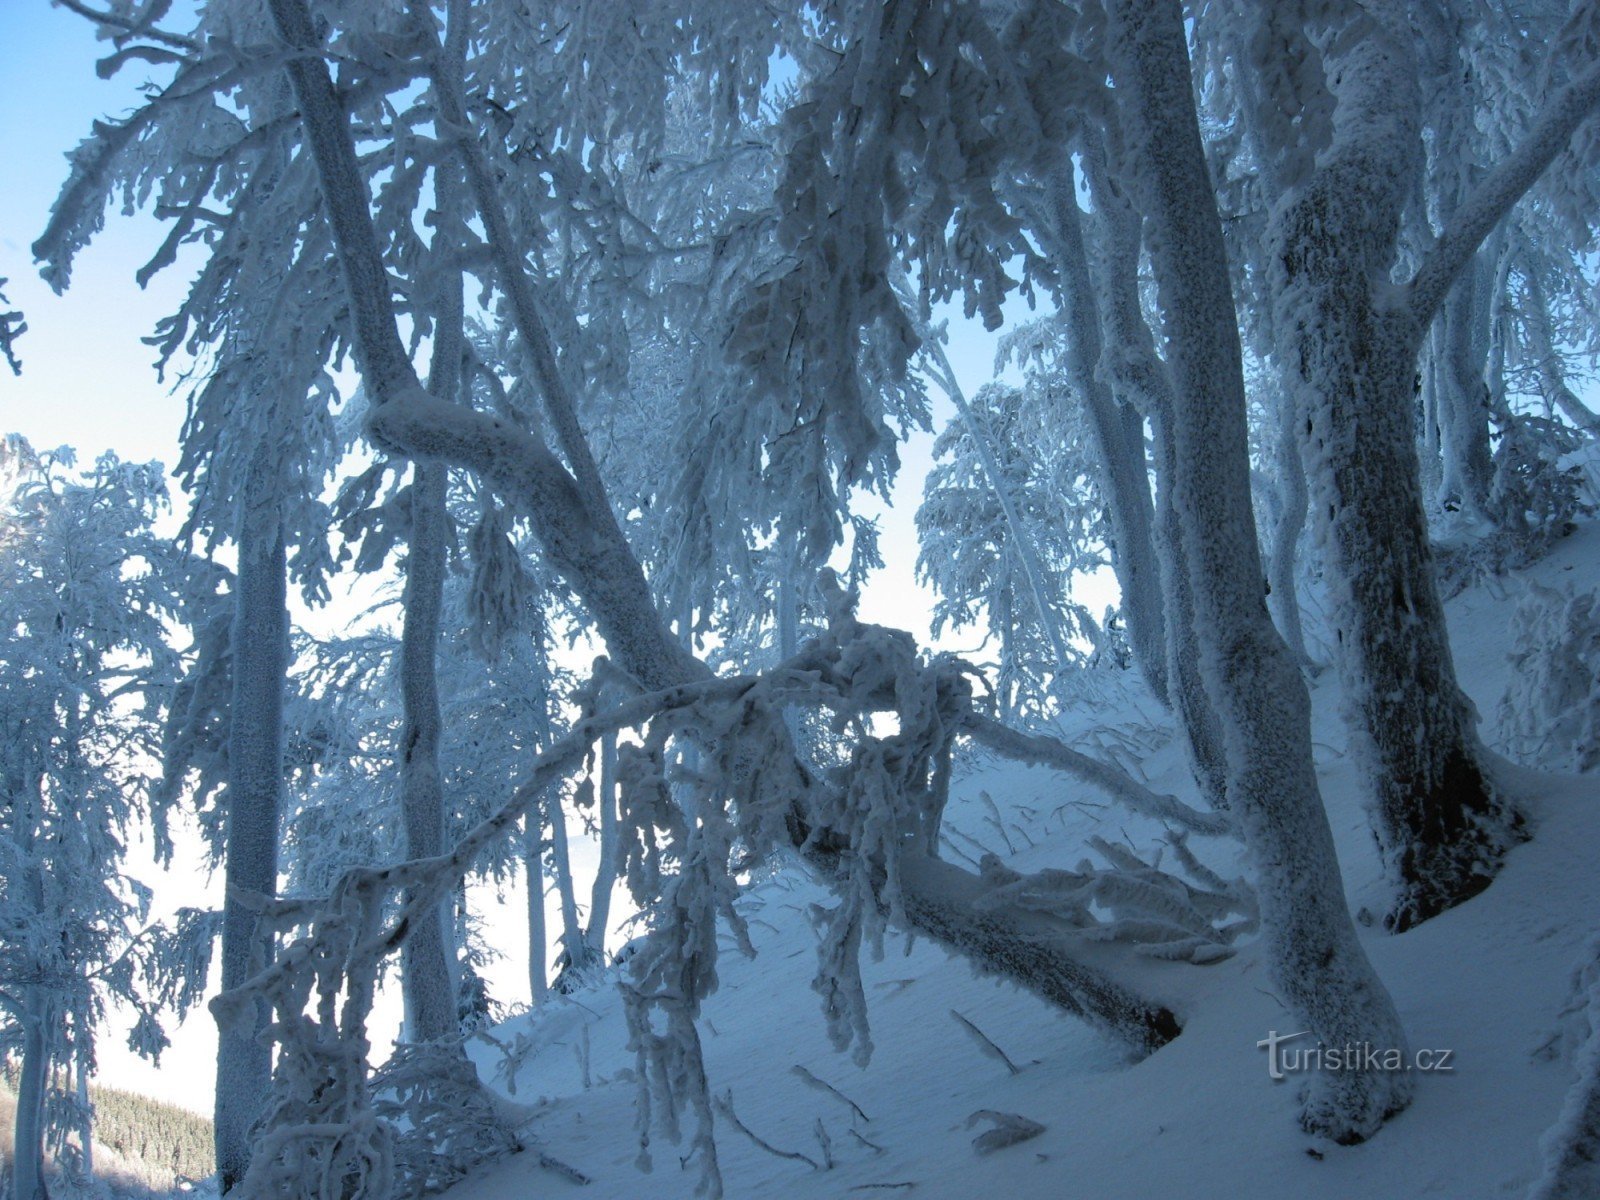 beech trees below the Kněhyn peak